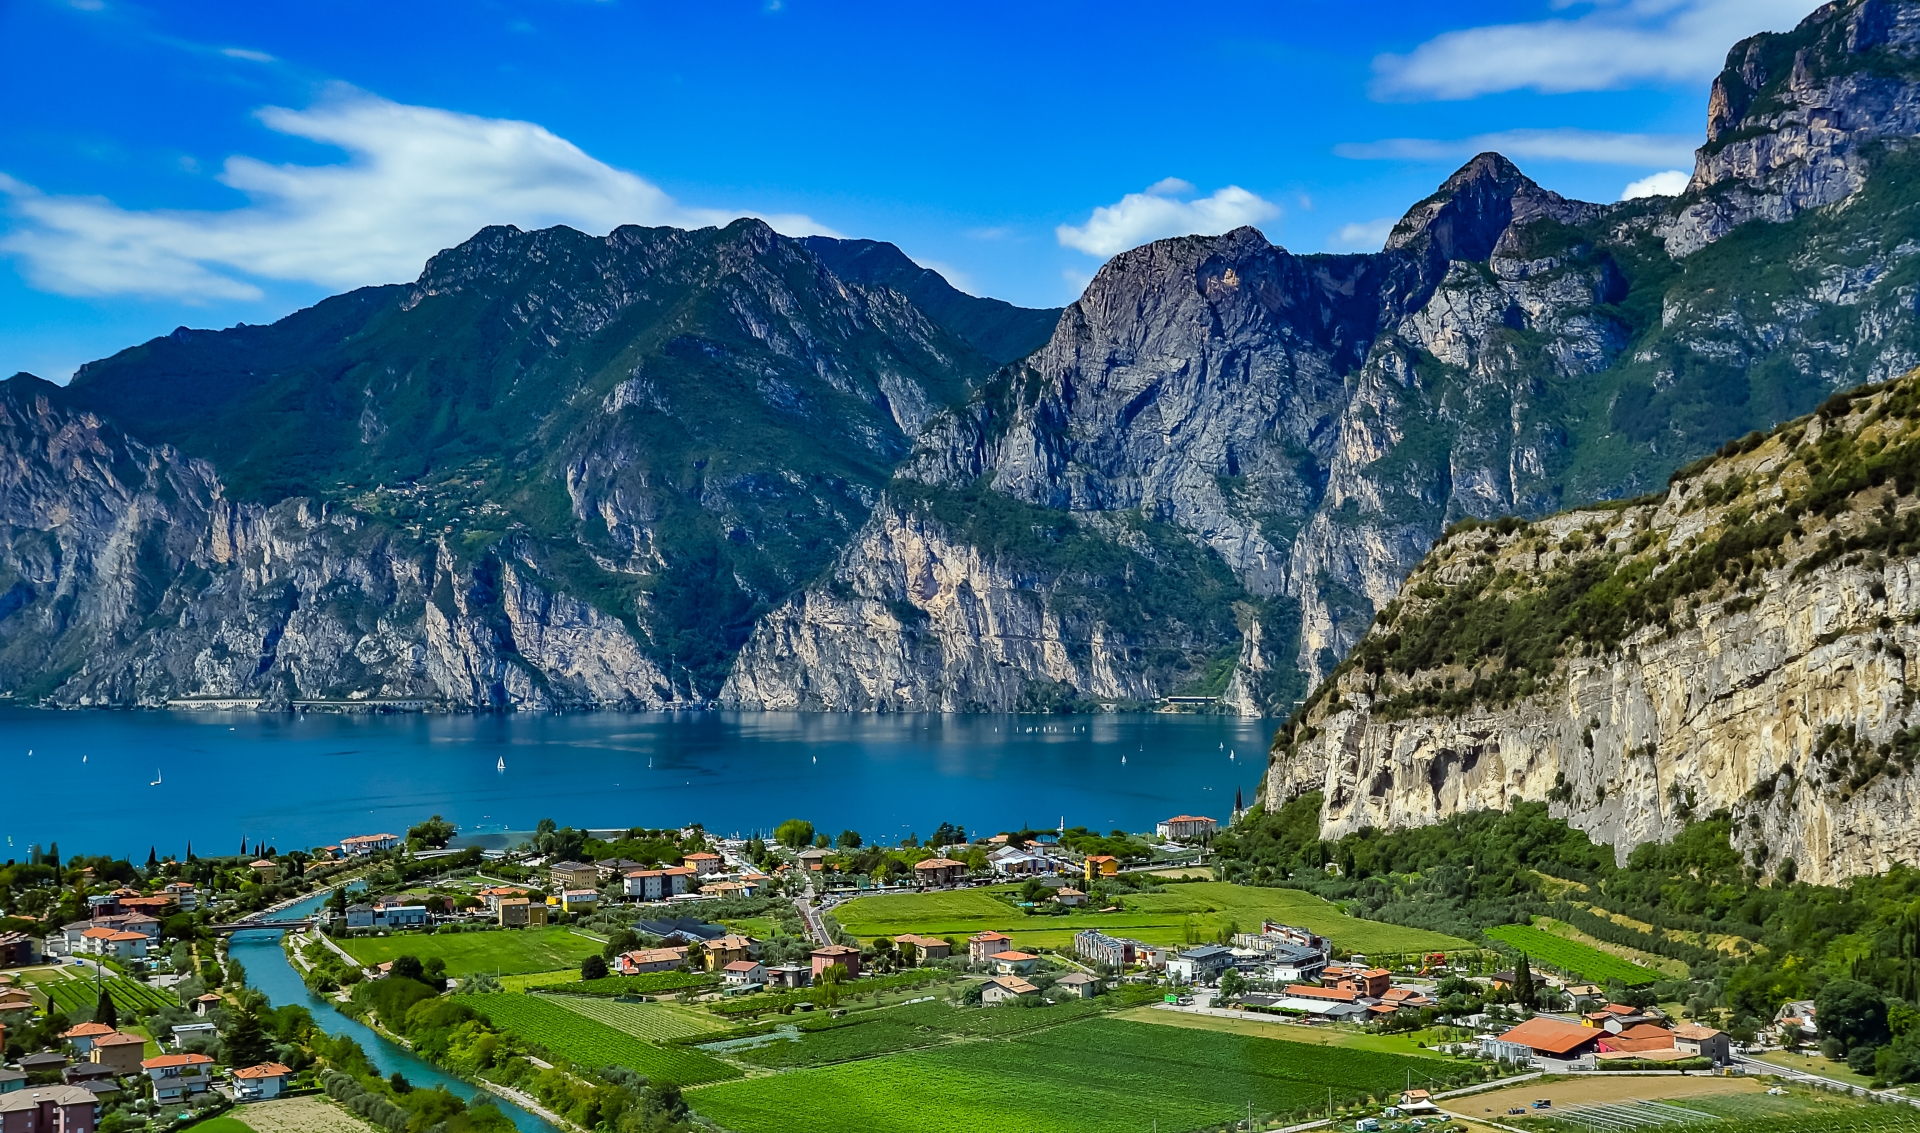 Riva del Garda - Italian adventure in Lake Garda & the Dolomites